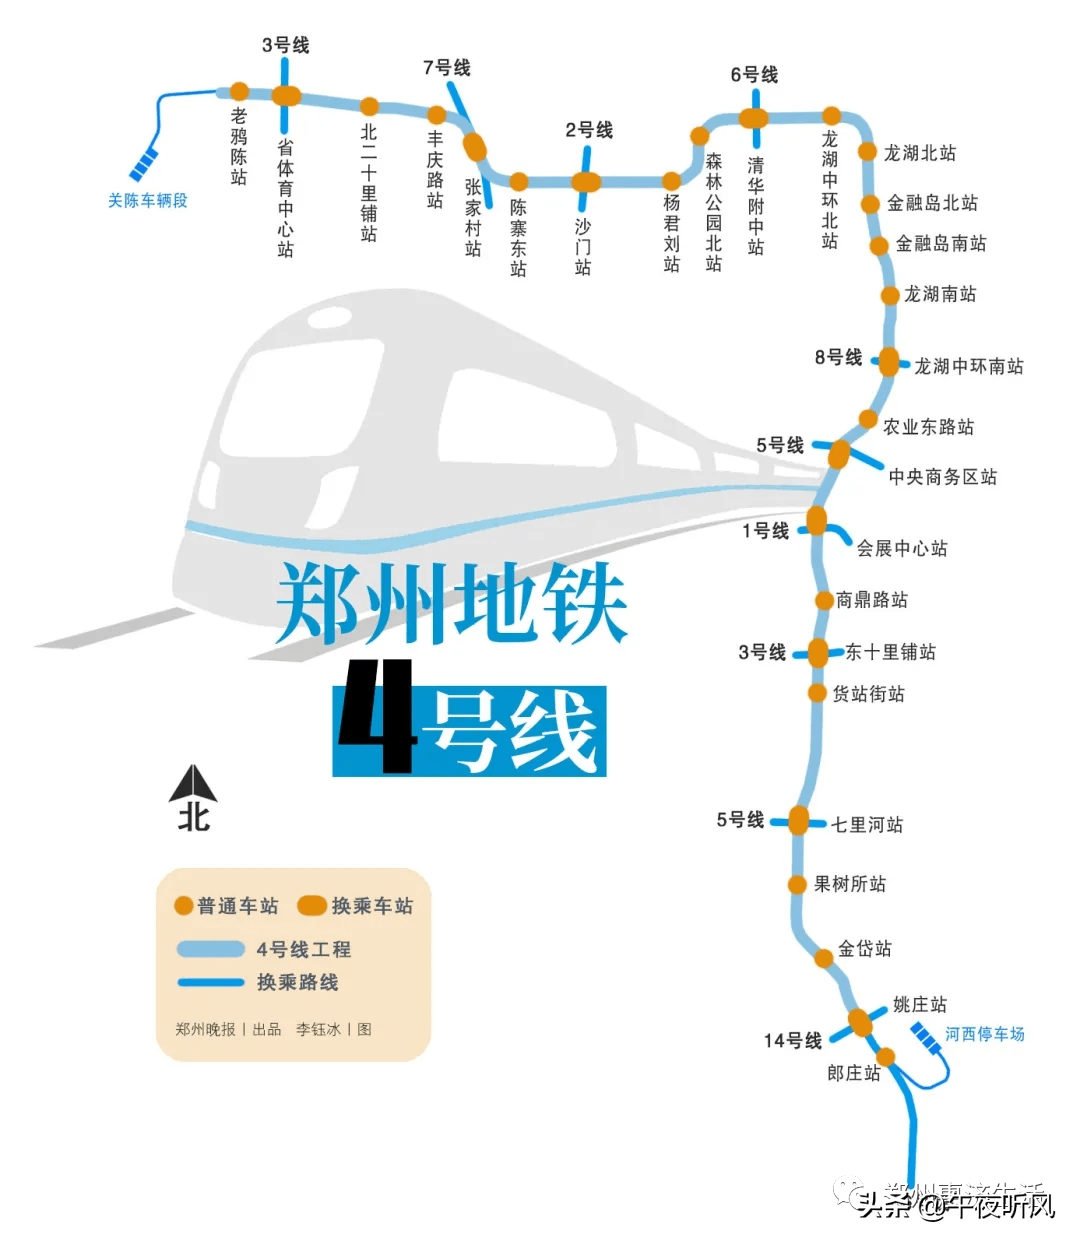 郑州7号线二期图片